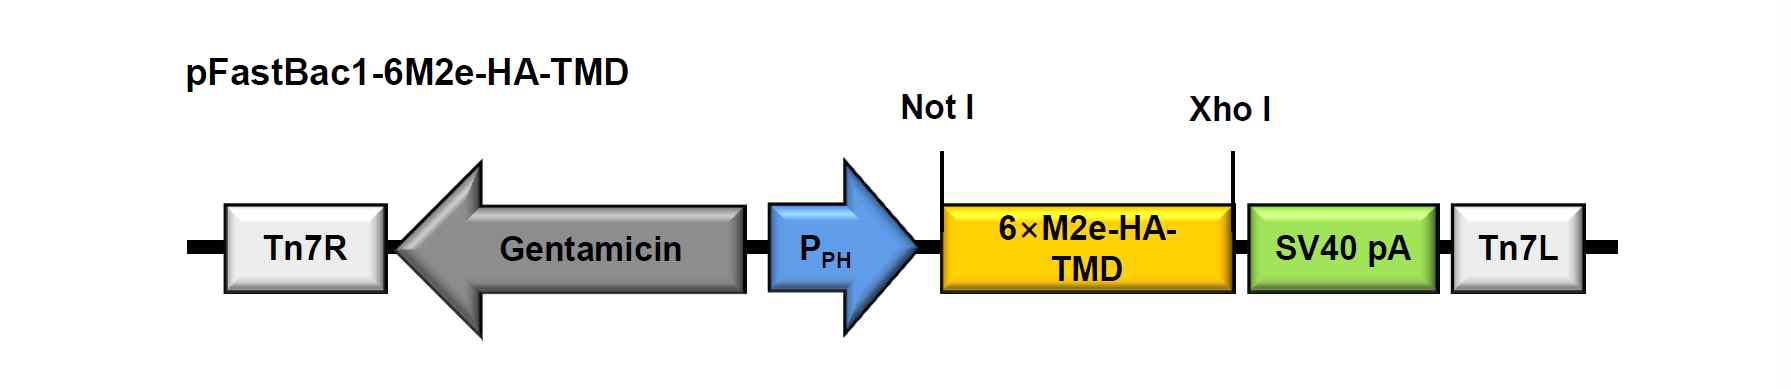 범용백신용 6M2e-HA-TMD 발현 재조합 배큘로바이러스 제조를 위한 pFastBac1/6M2e-HA-TMD 벡터의 모식도.